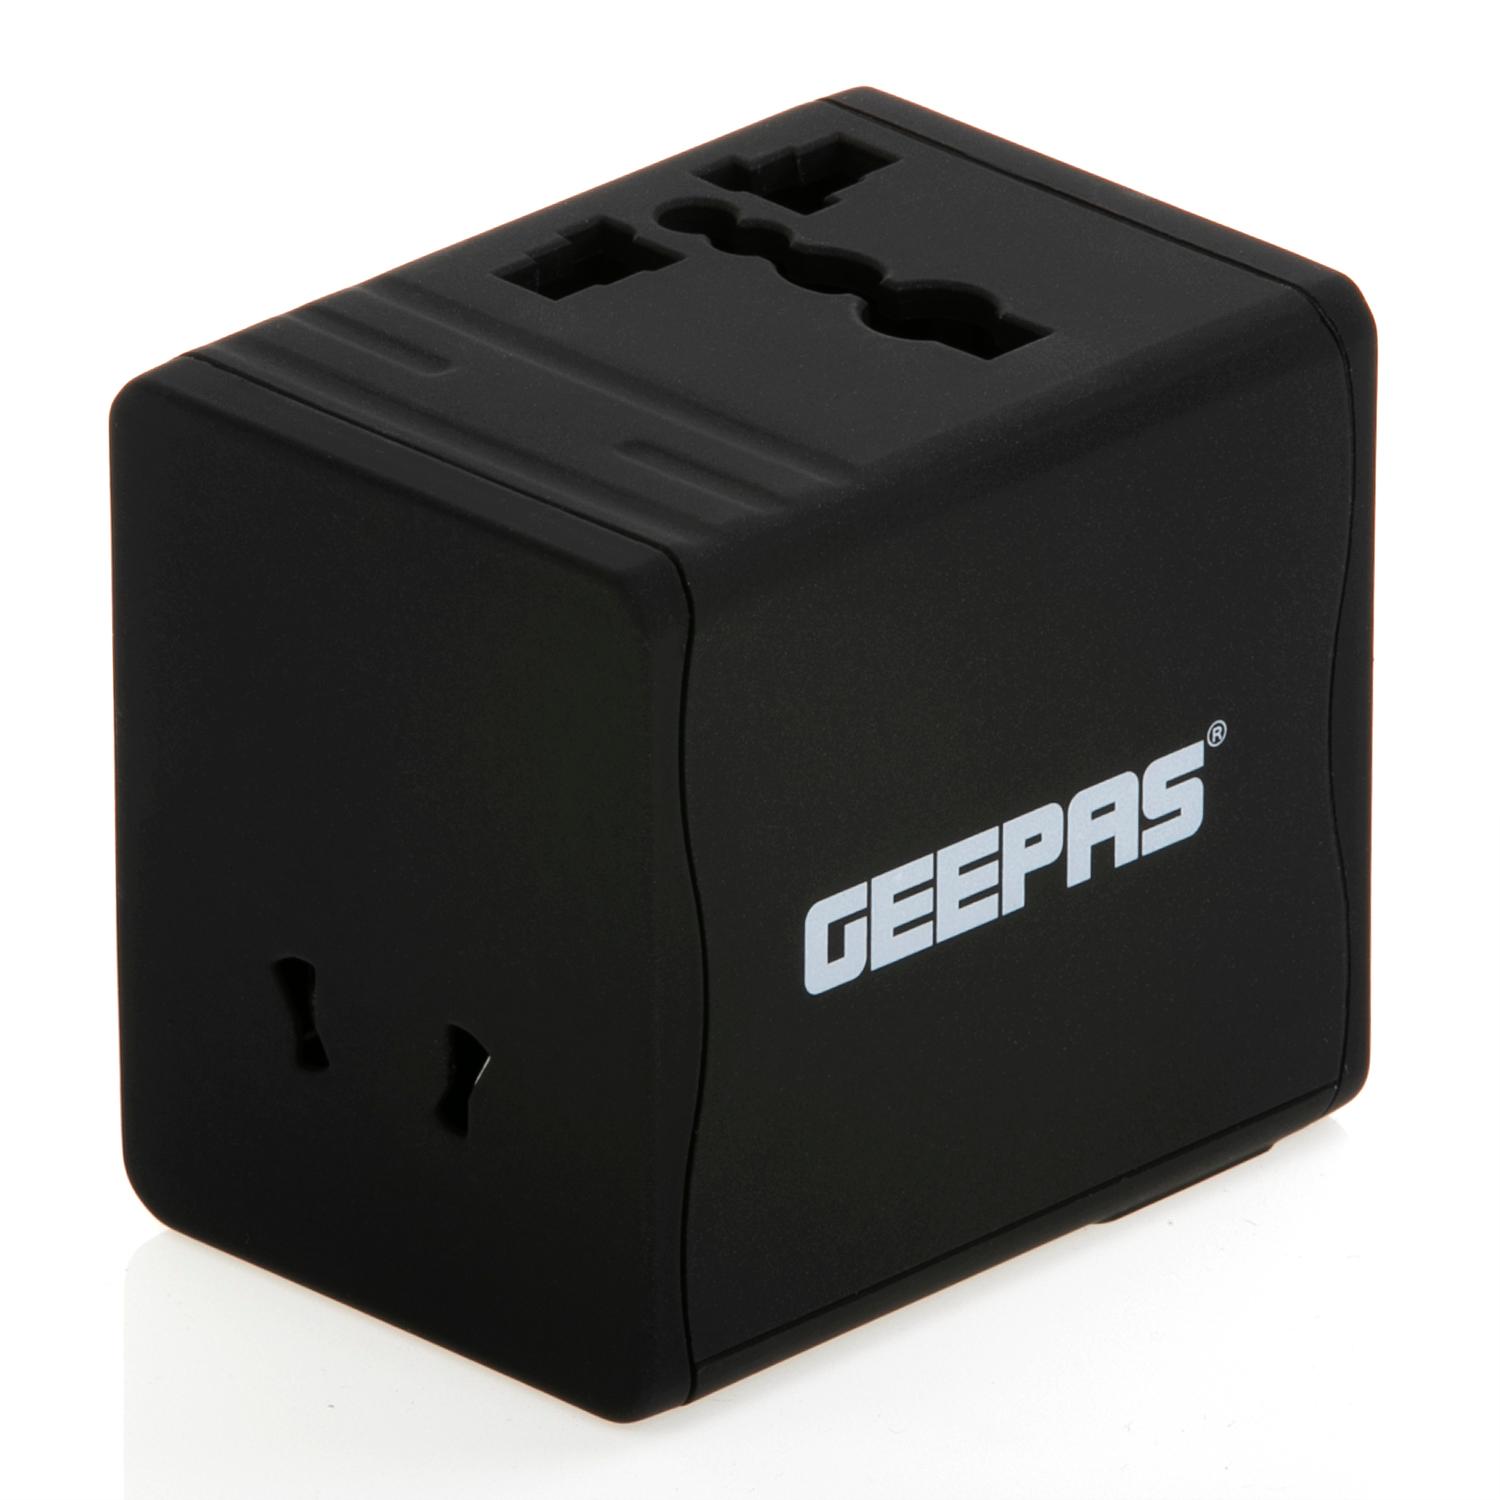 محول يو اس بي Geepas Universal Adapter For Electric Devices,two USB ports 5 Volts and 2.1 Amperes